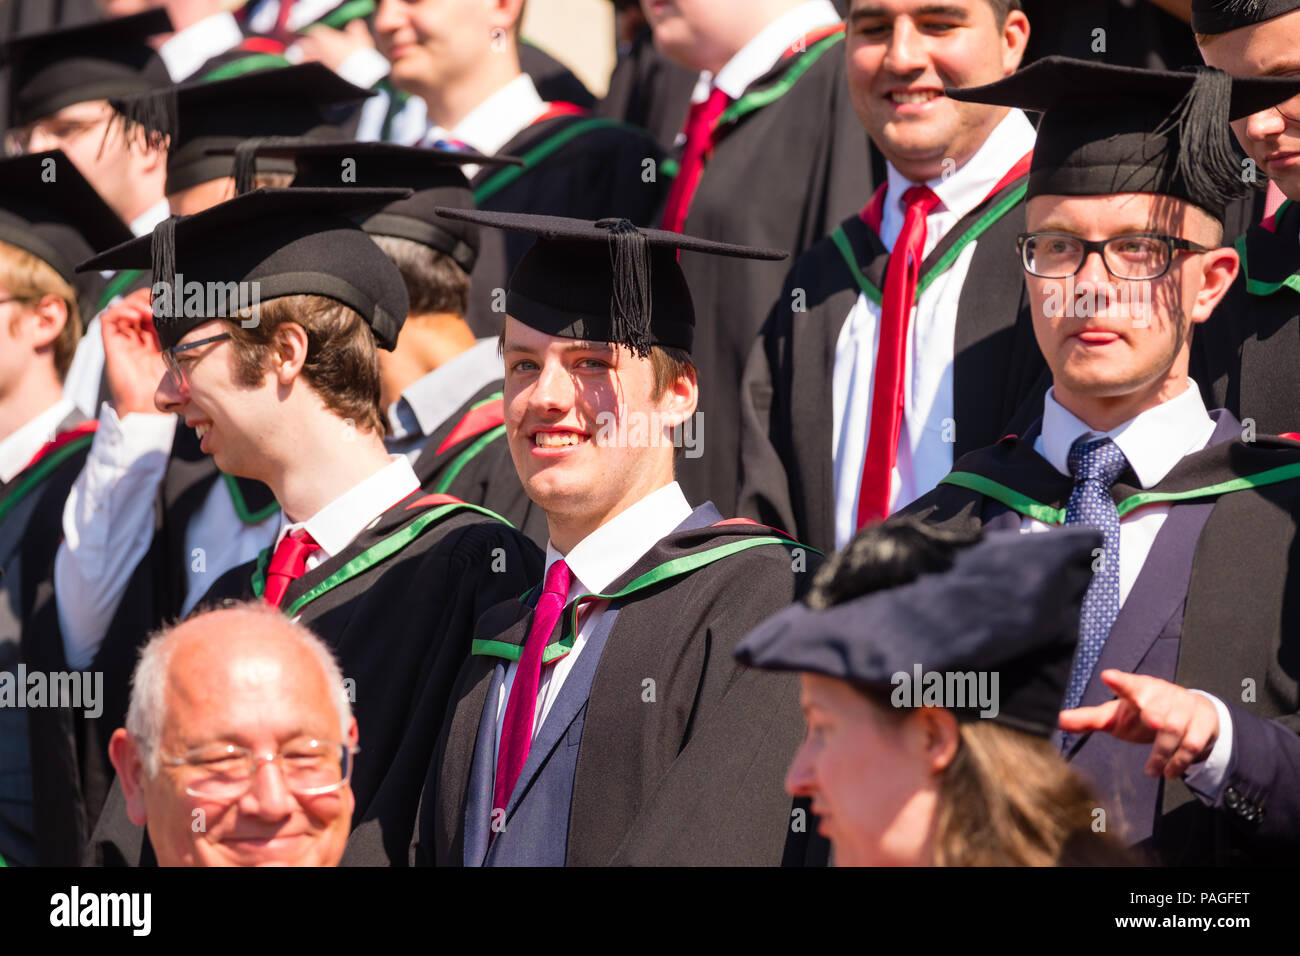 L'enseignement supérieur au Royaume-Uni : les finissants d'université d'Aberystwyth, à leurs conseils et le mortier traditionnel robes académiques noir, posant pour la photo de groupe traditionnelle. Juillet 2018 Banque D'Images